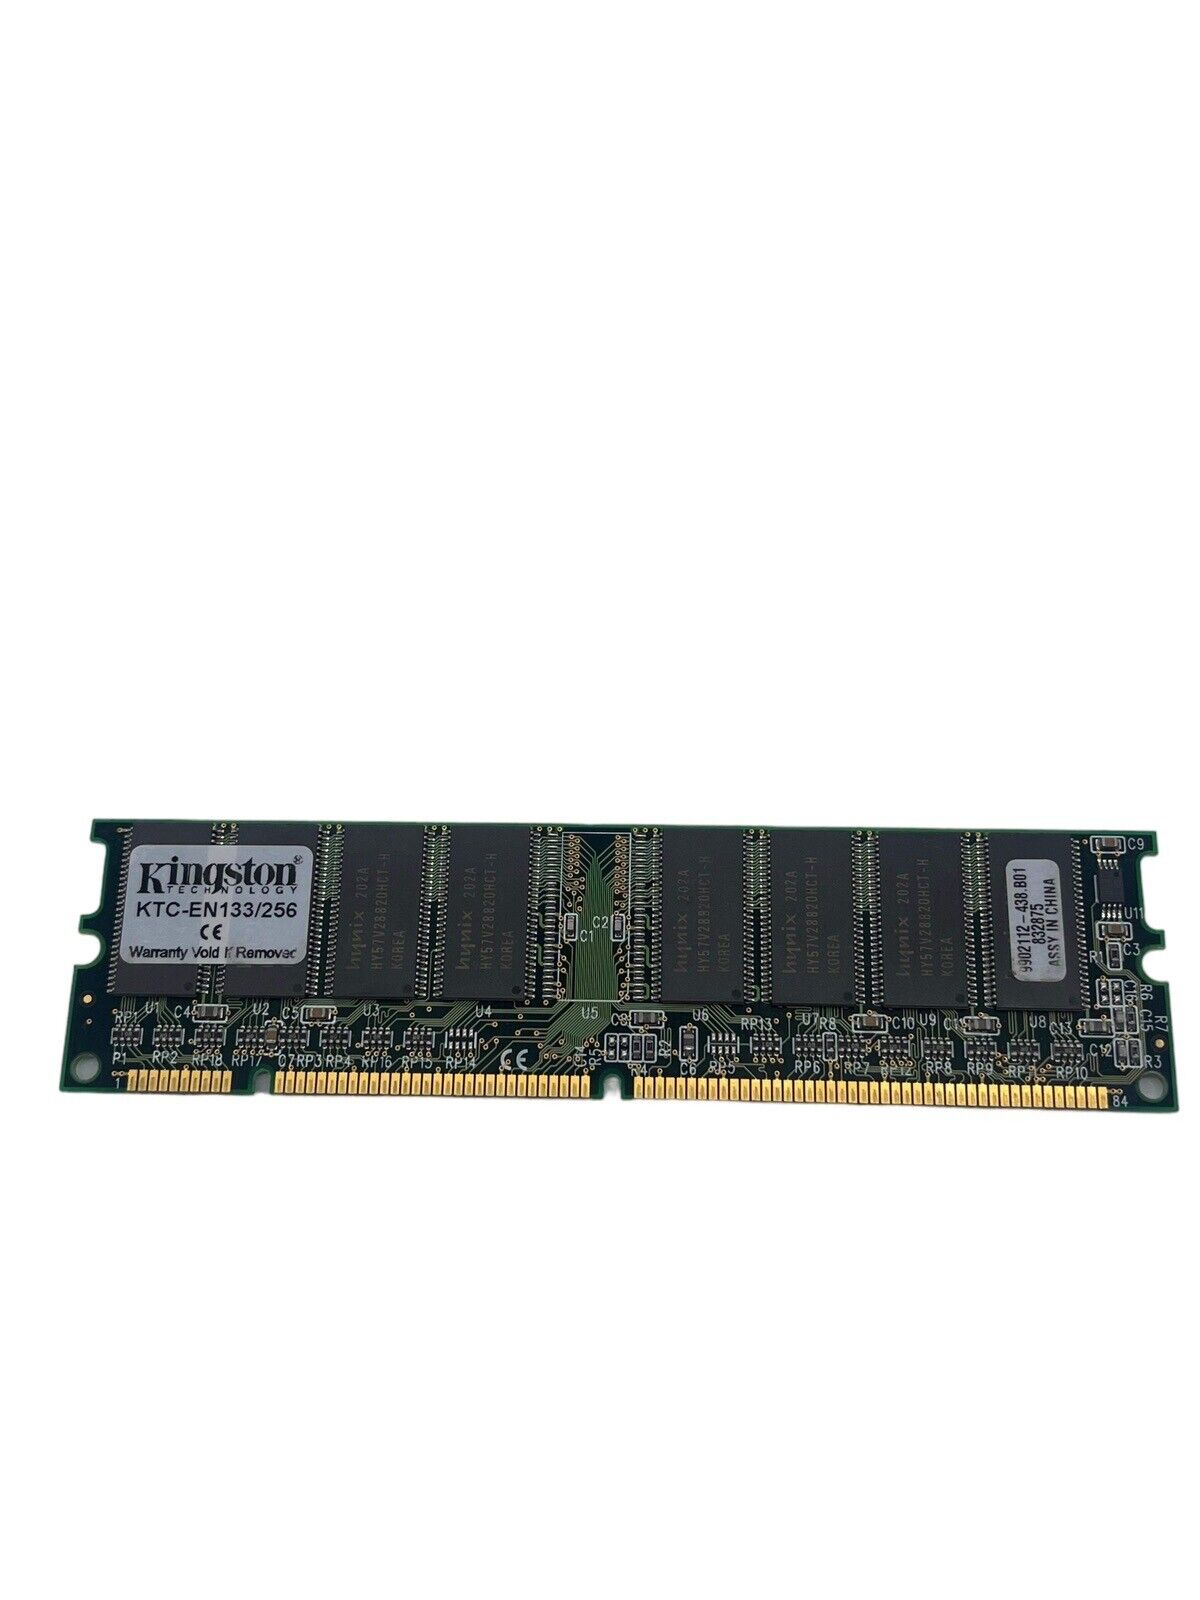 Kingston Technology KTC-EN133/256 256MB Memory Module